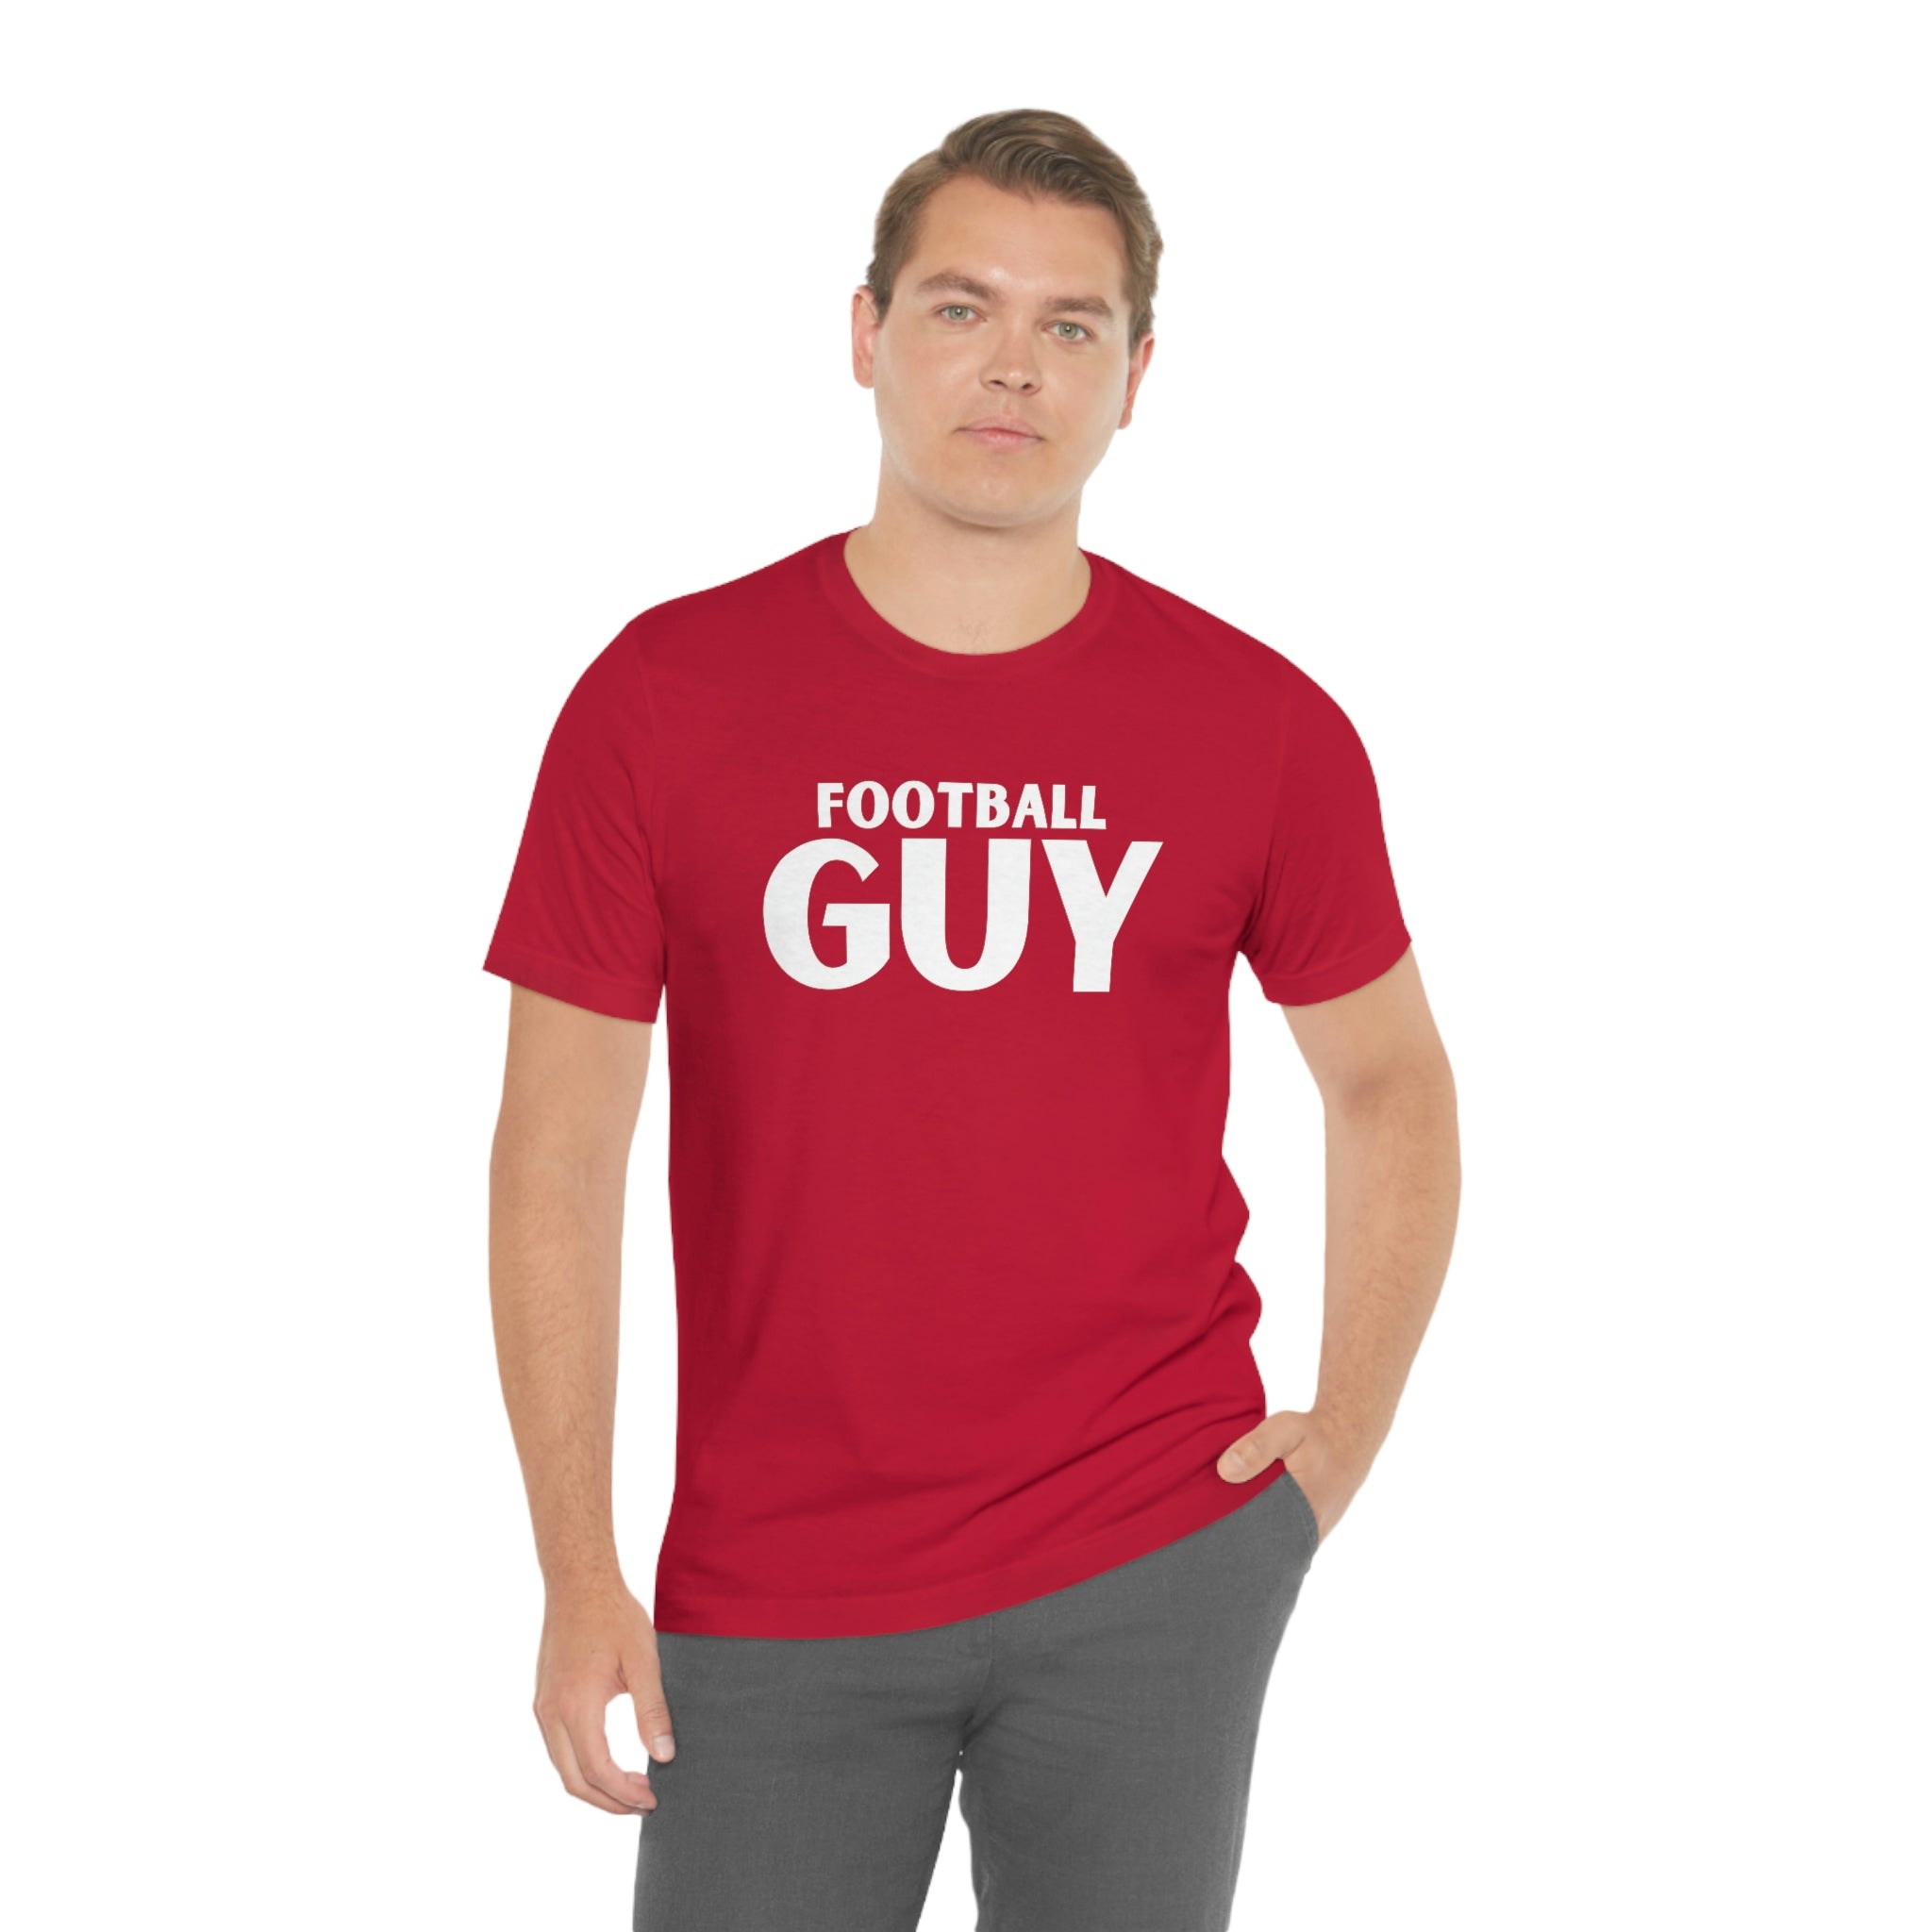 Football Guy Short Sleeve Tee